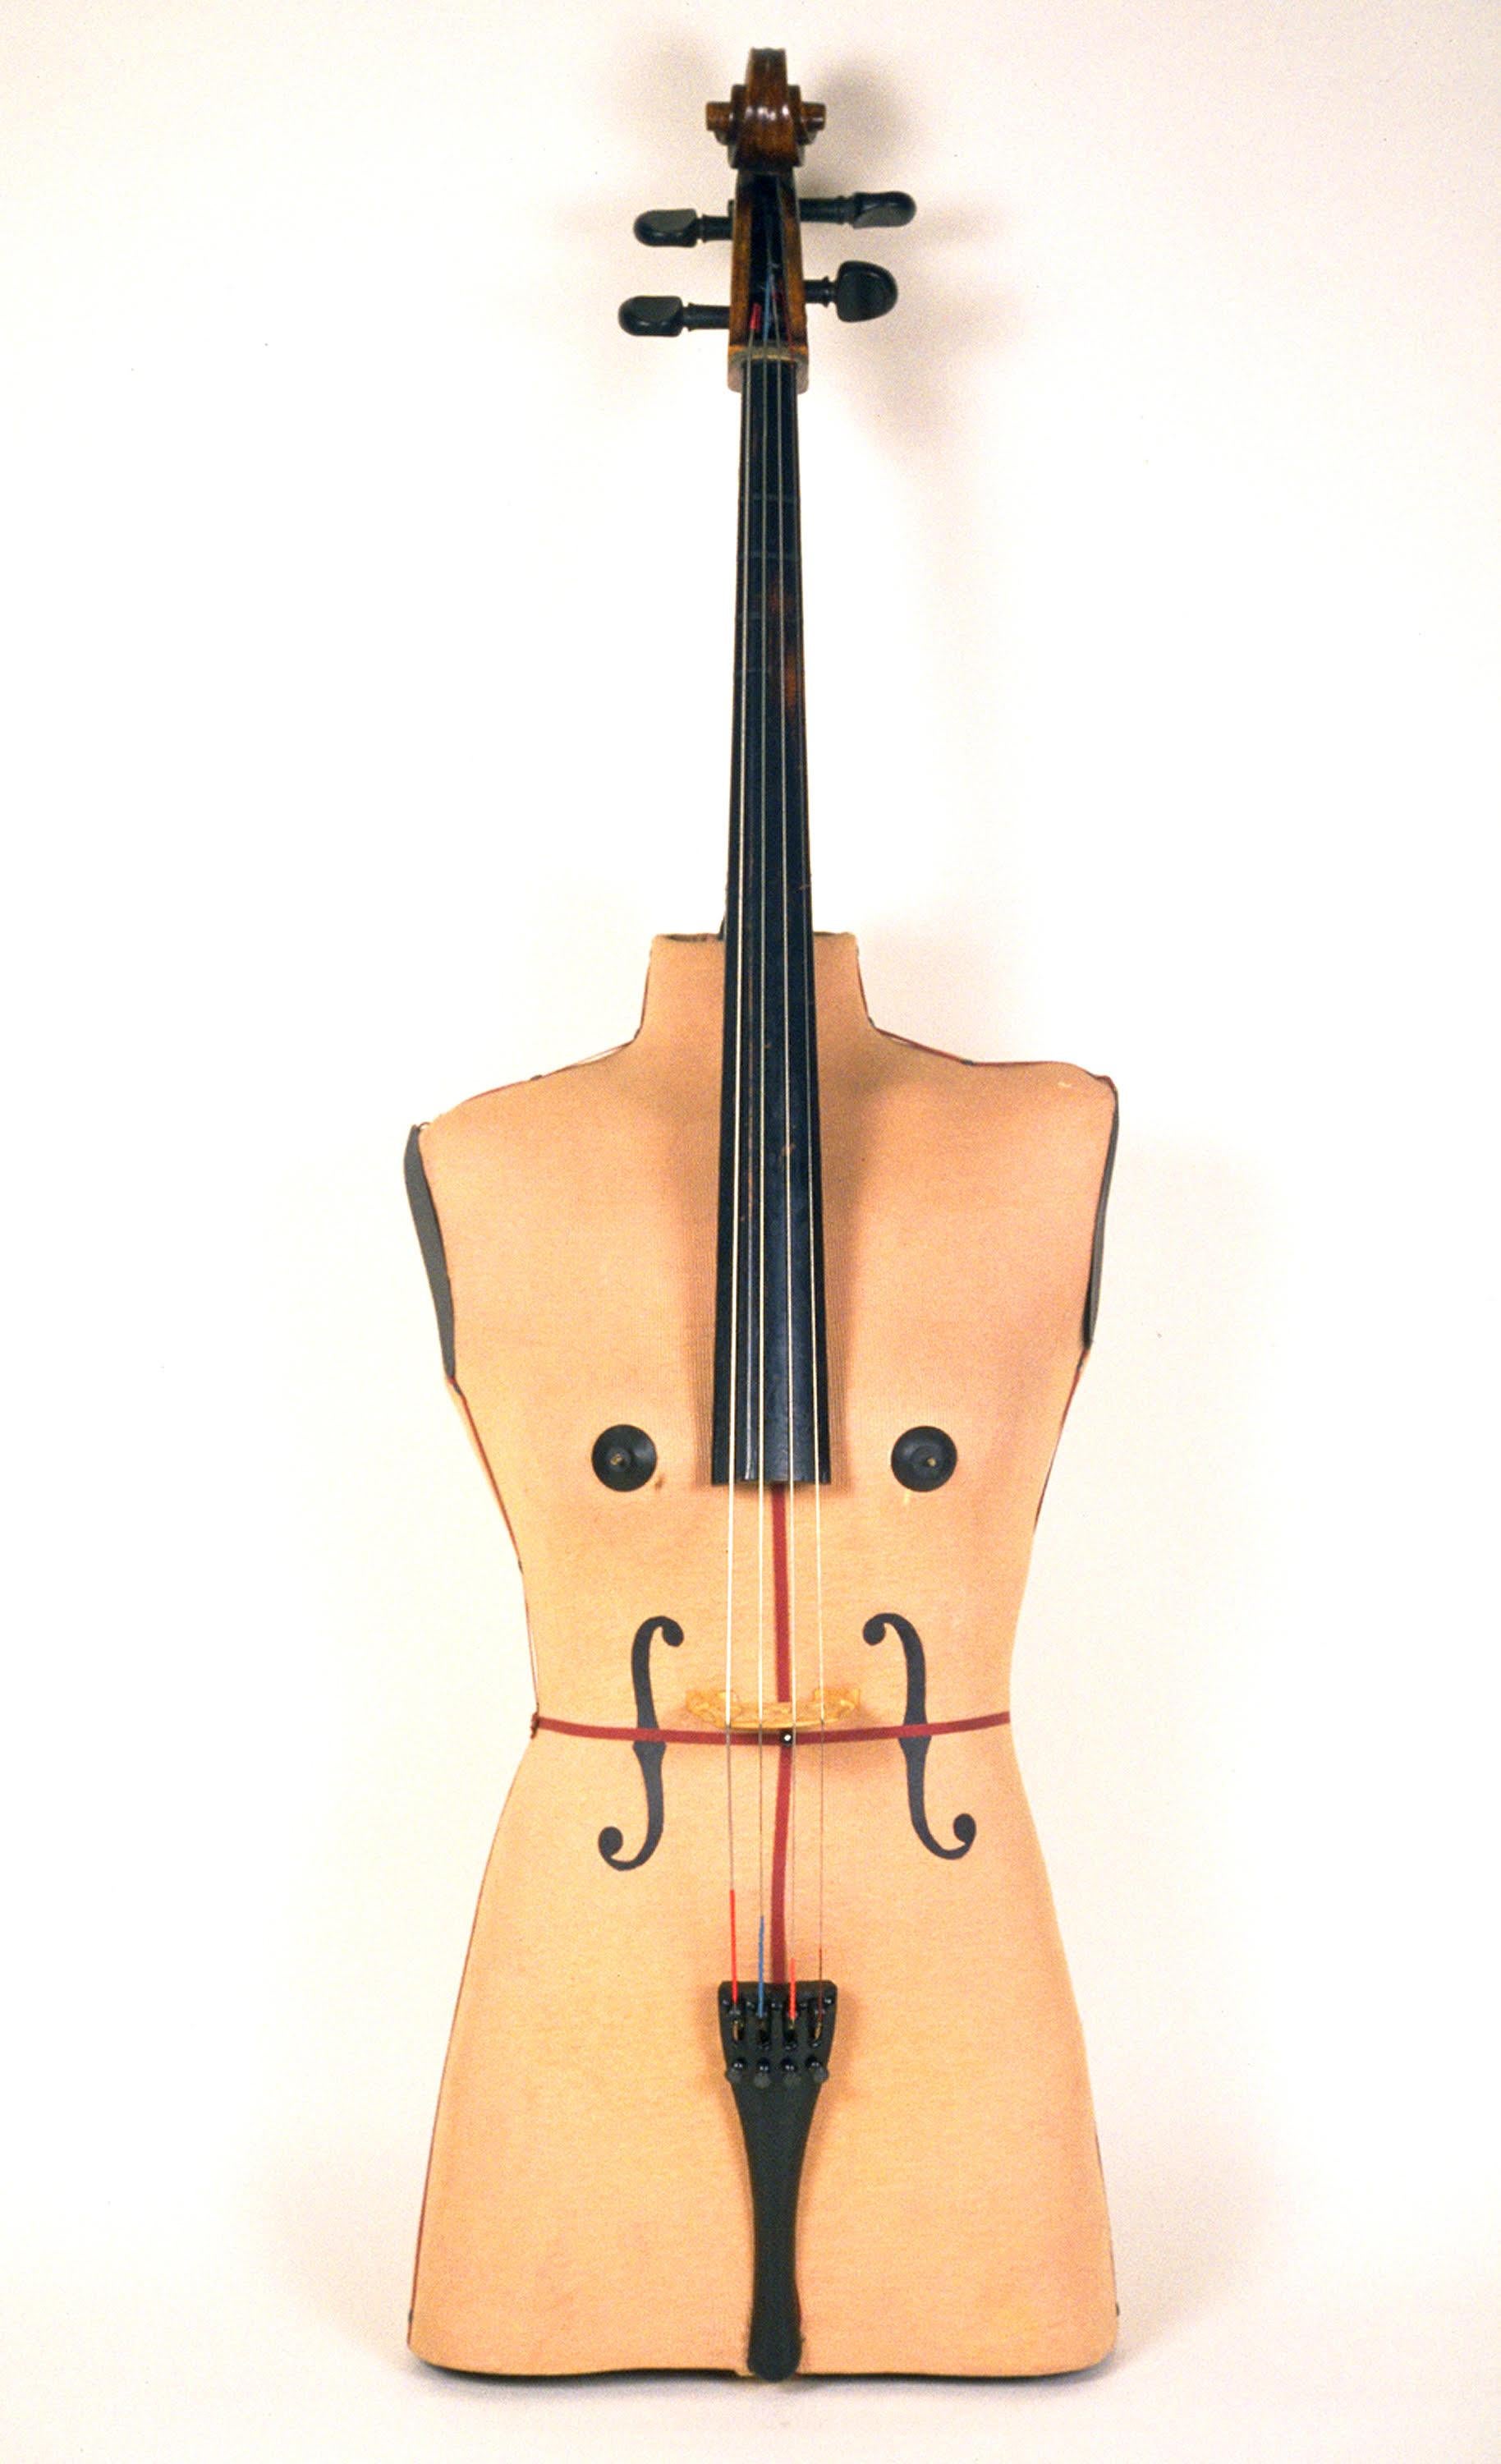 Sculpture d'instruments de musique hybrides Torso Cello, assemblage